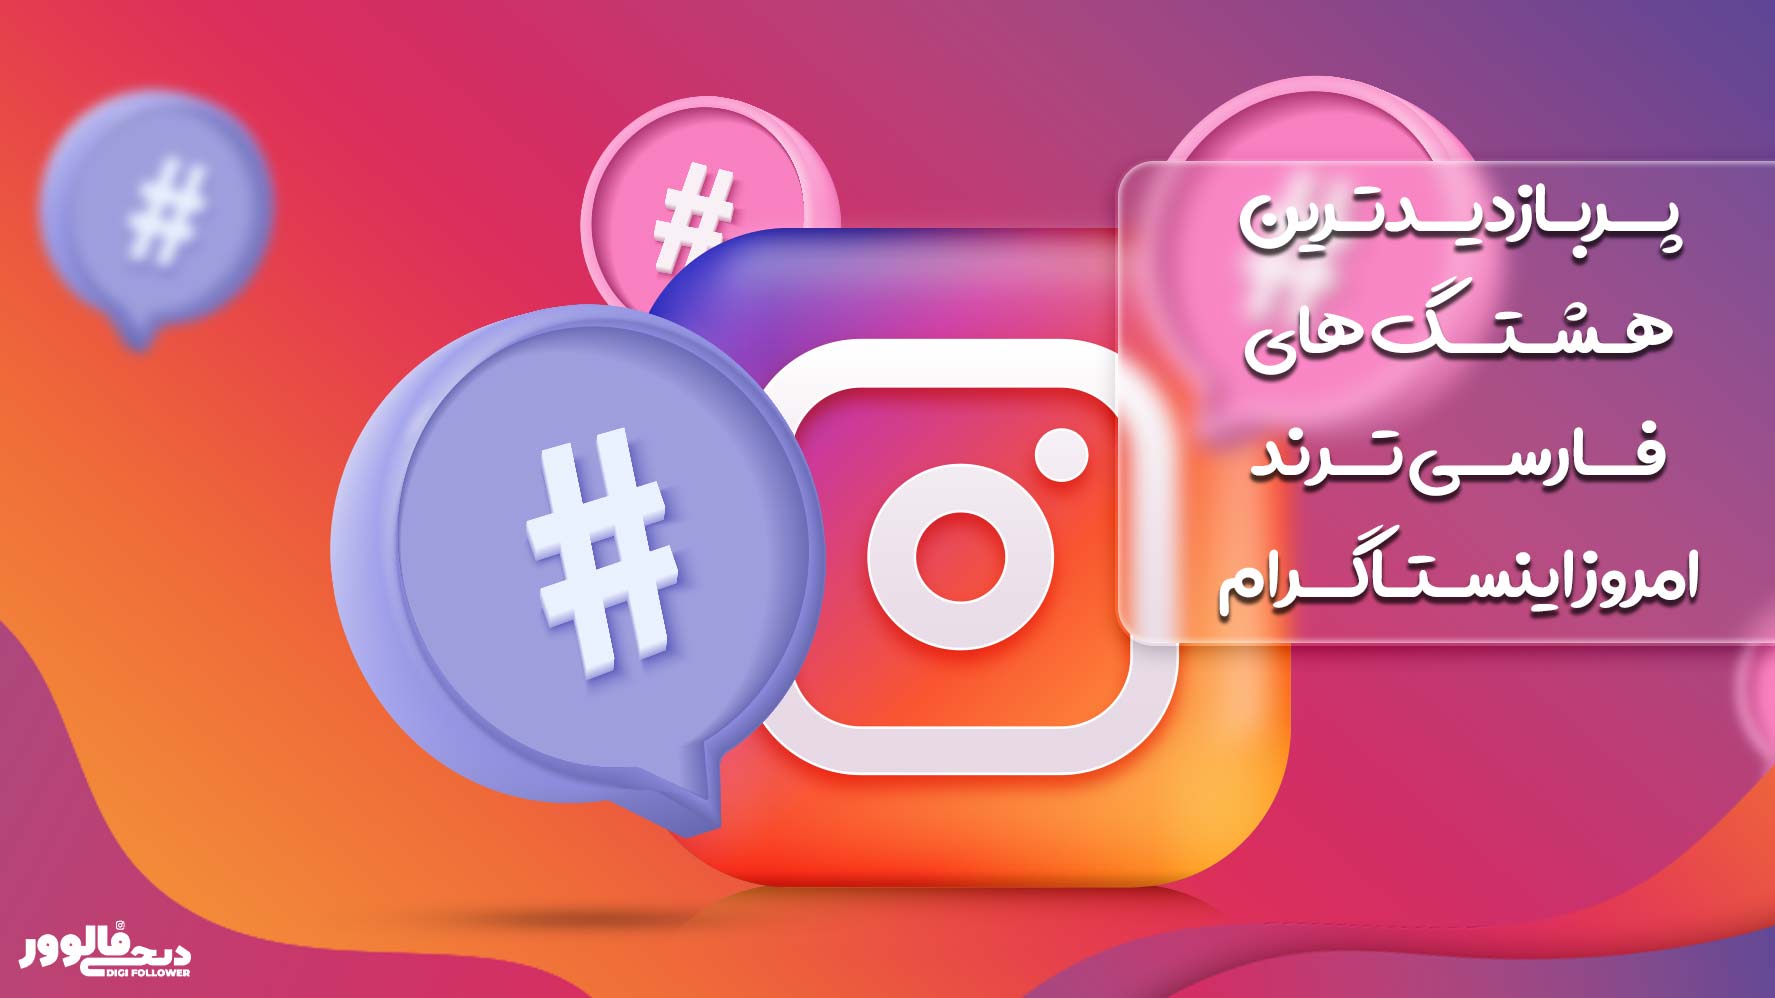 پربازدیدترین هشتگ های فارسی ترند امروز اینستاگرام